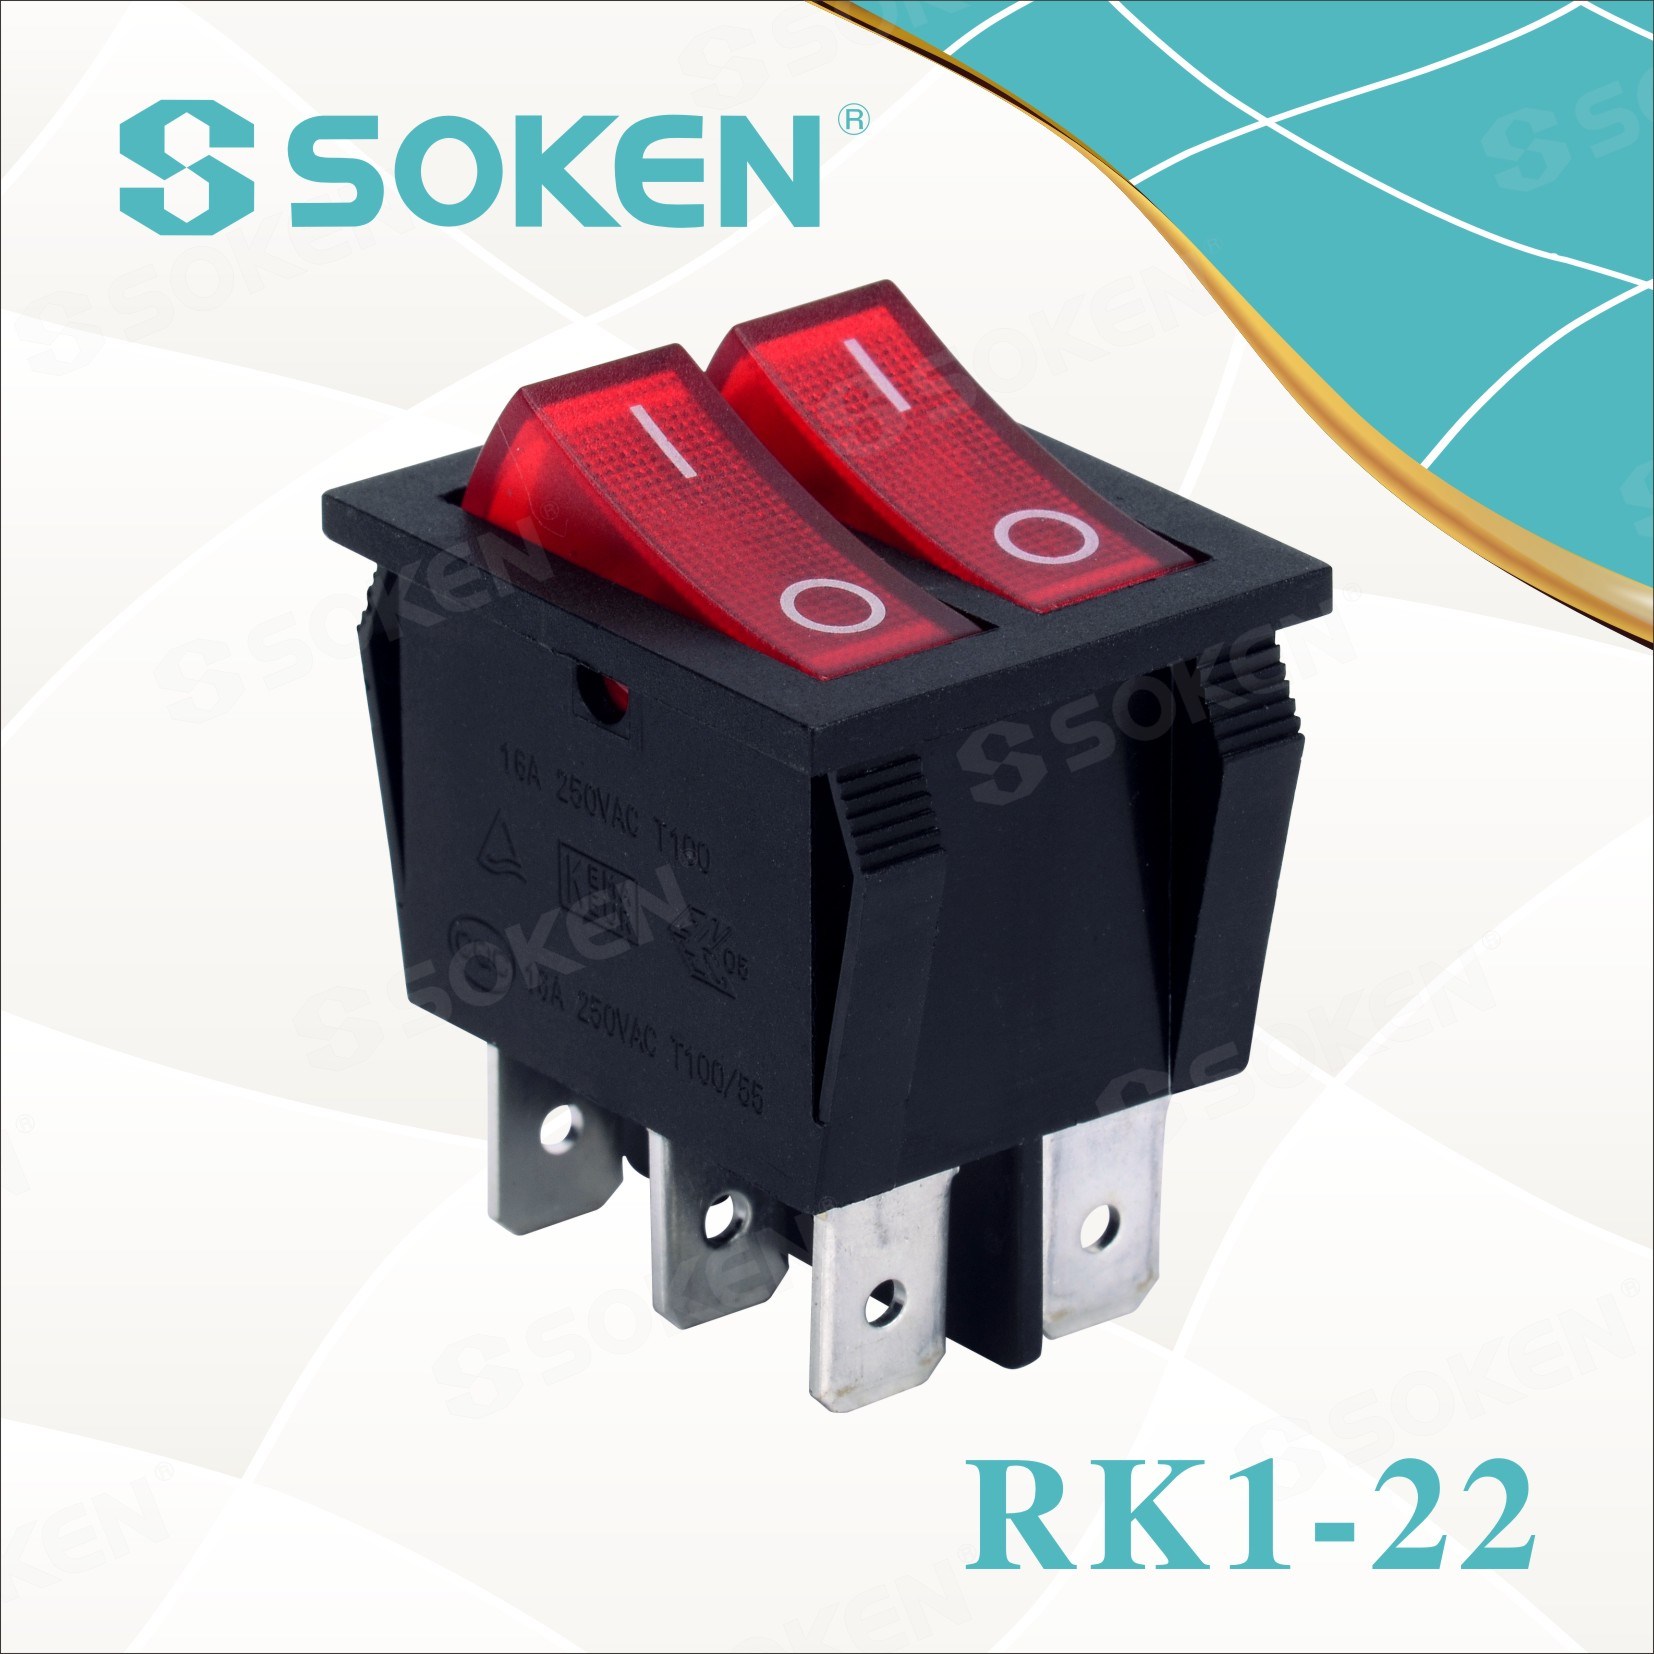 Soken Rk1-22 1X1X2n i luga ole Iluminated Double Rocker Switch